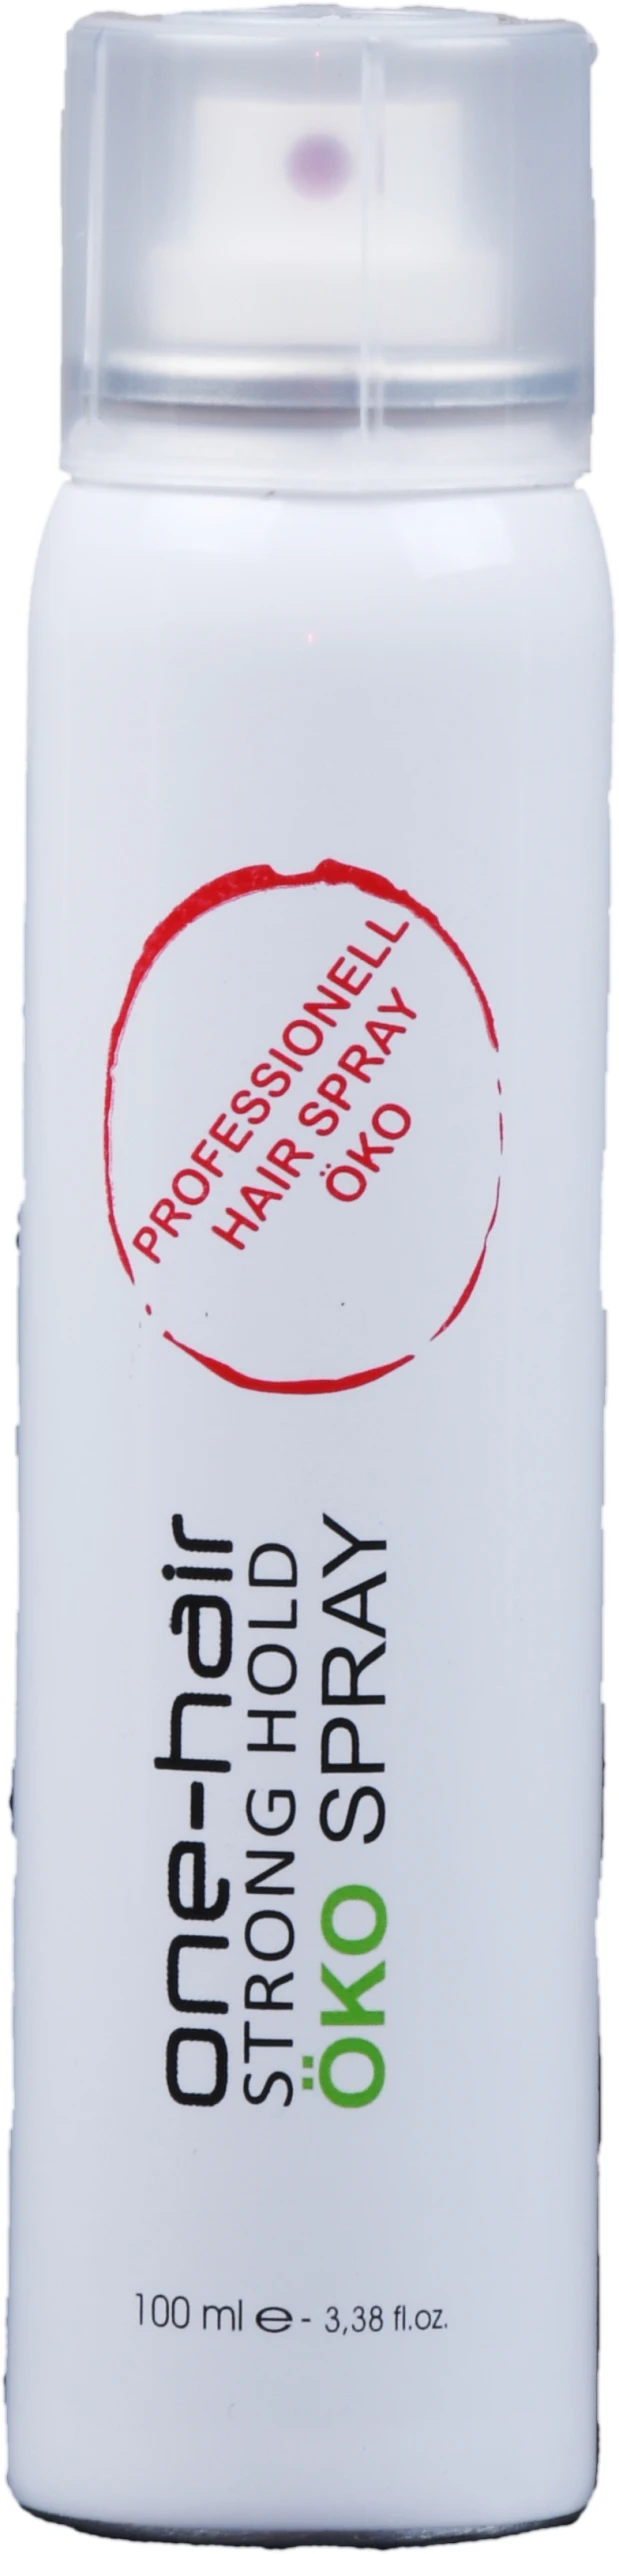 Öko Haarspray ohne Gas 100 ml, one-hair